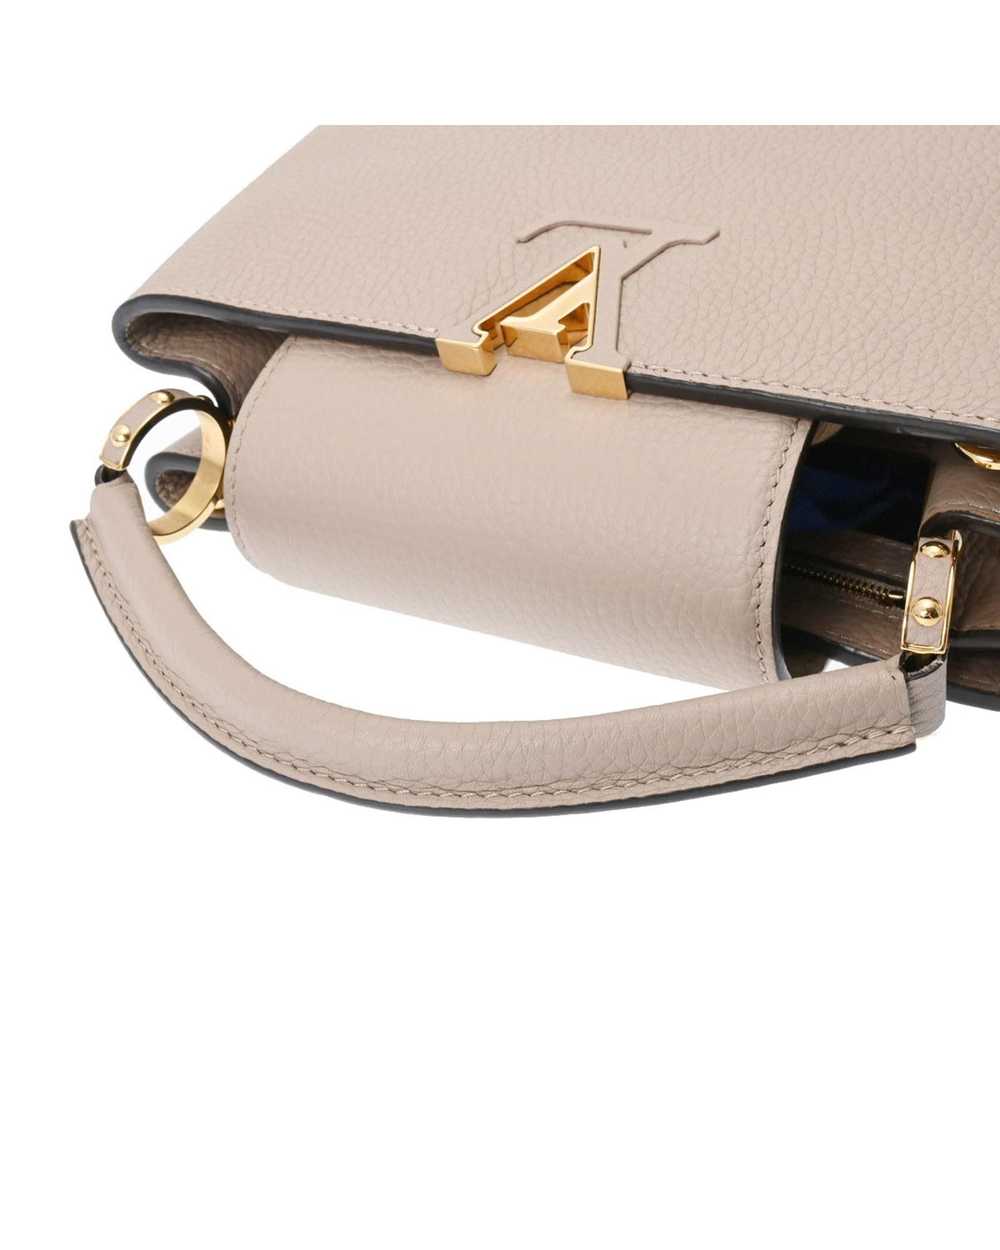 Louis Vuitton Sophisticated Leather Flap Handbag - image 3